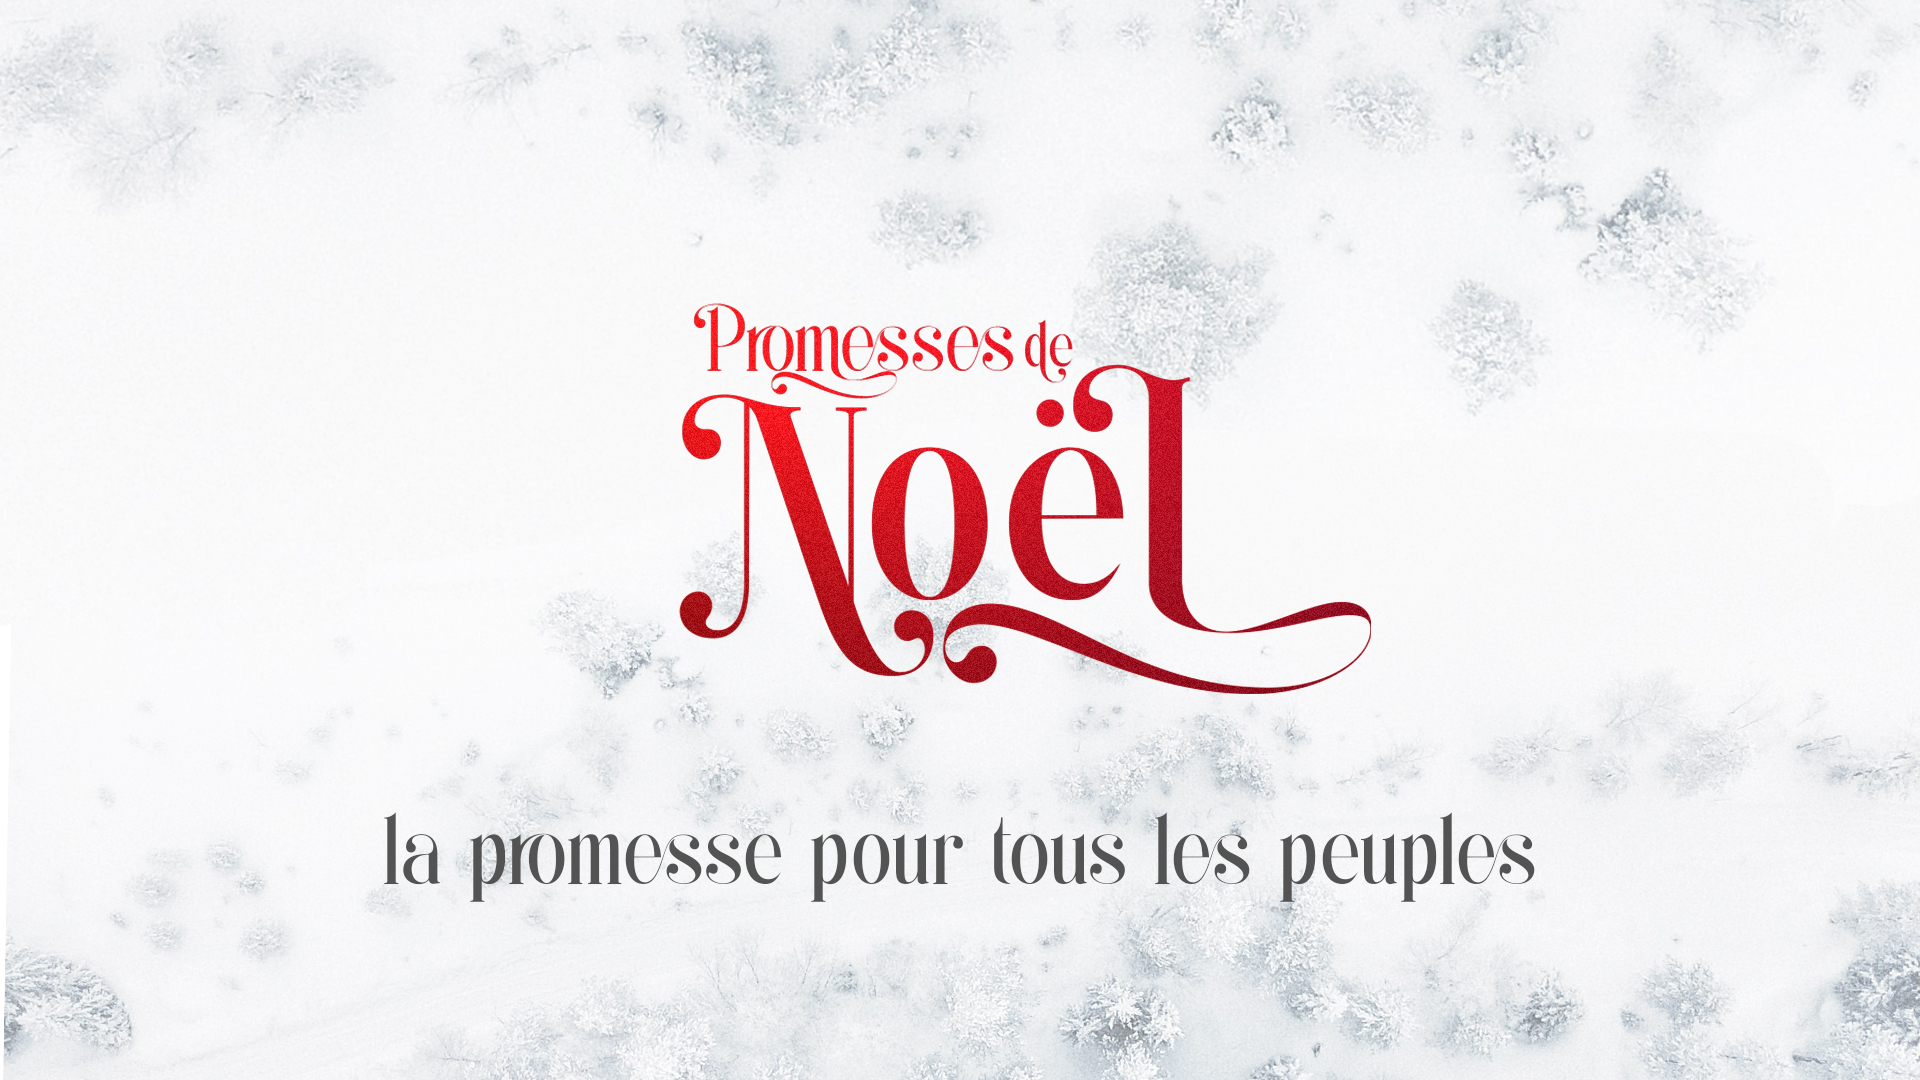 Promesses de Noël (3) – La promesse pour tous les peuples